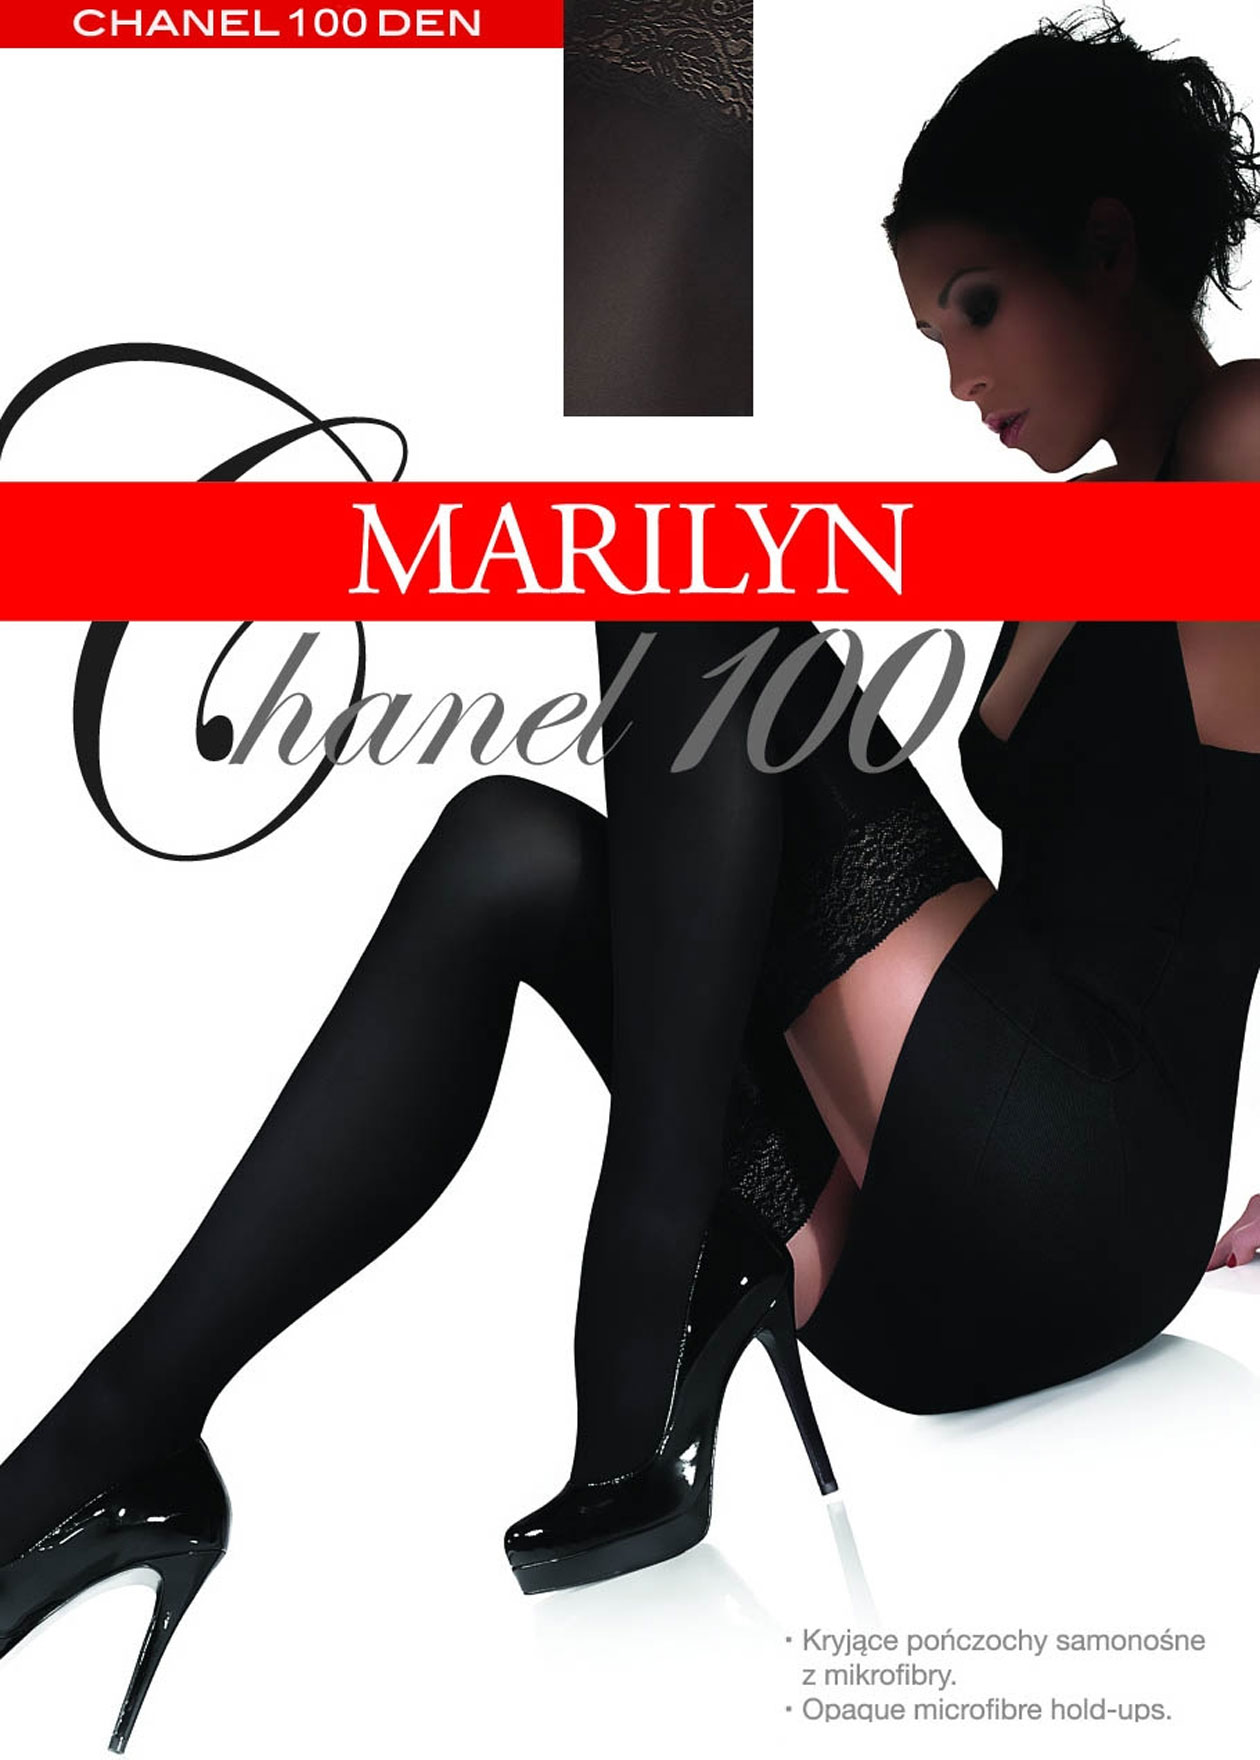 Marilyn Chanel 100